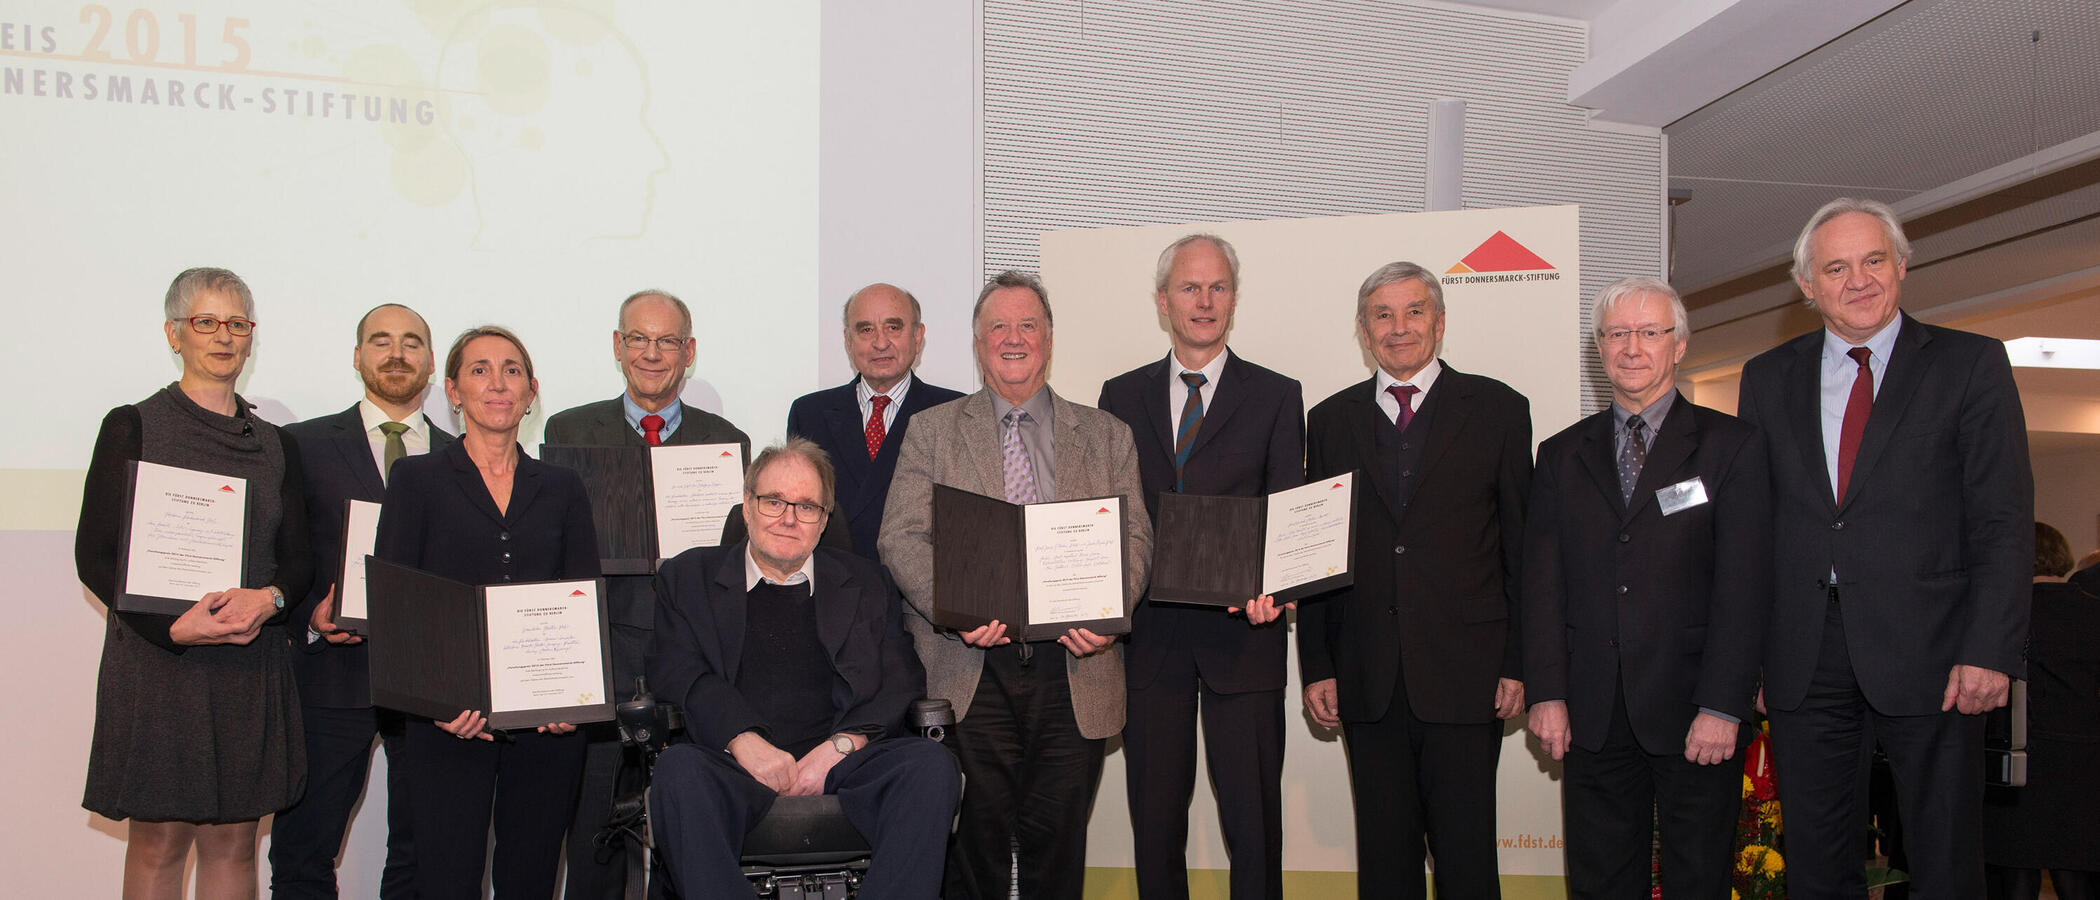 Gruppenfoto mit den Preistragenden, der Jury und Co. bei der Forschungspreisverleihung 2015. 